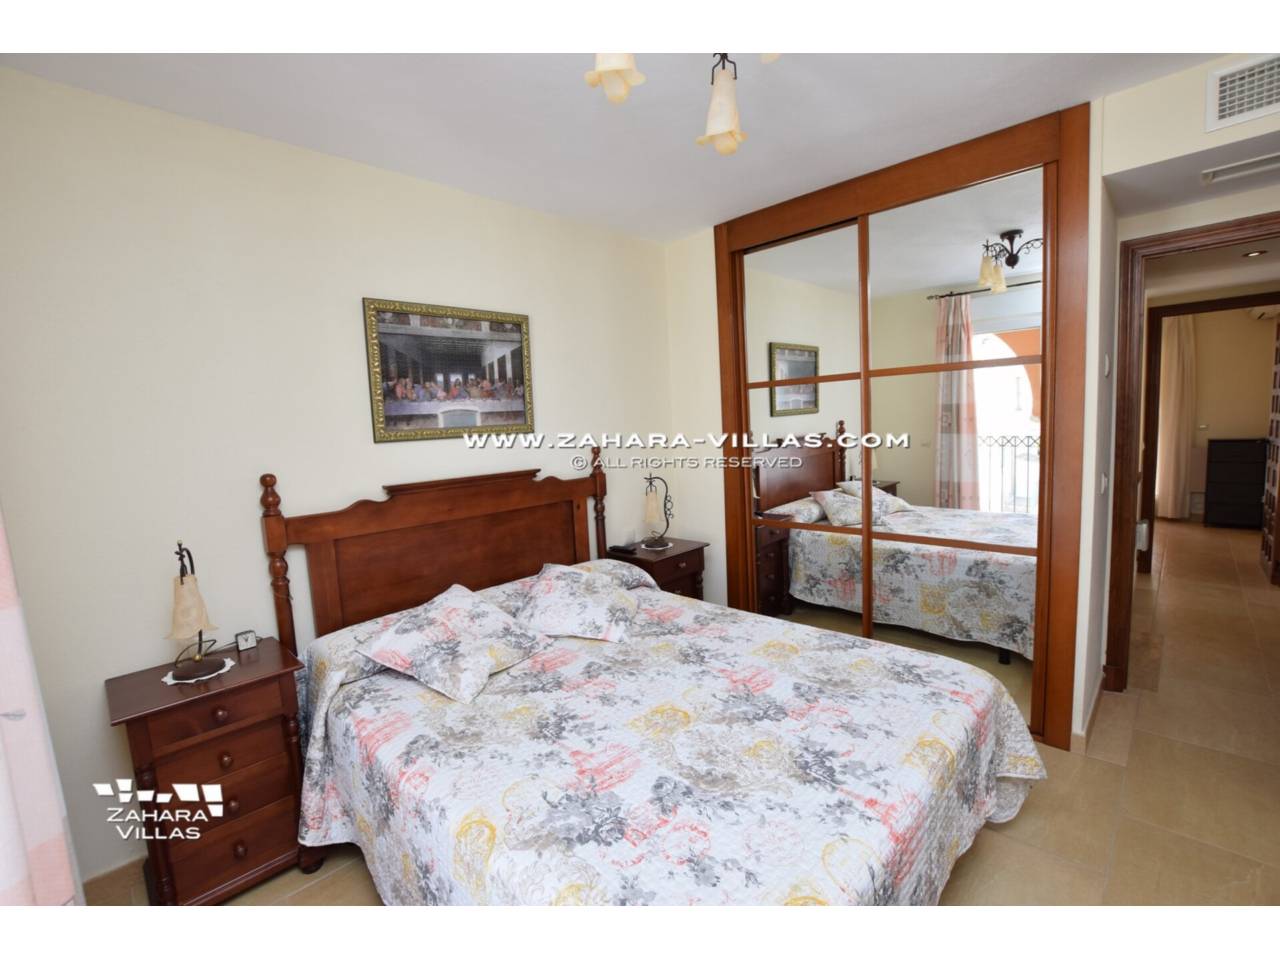 Imagen 19 de Semi-detached house for sale in Zahara de los Atunes, Costa de la Luz